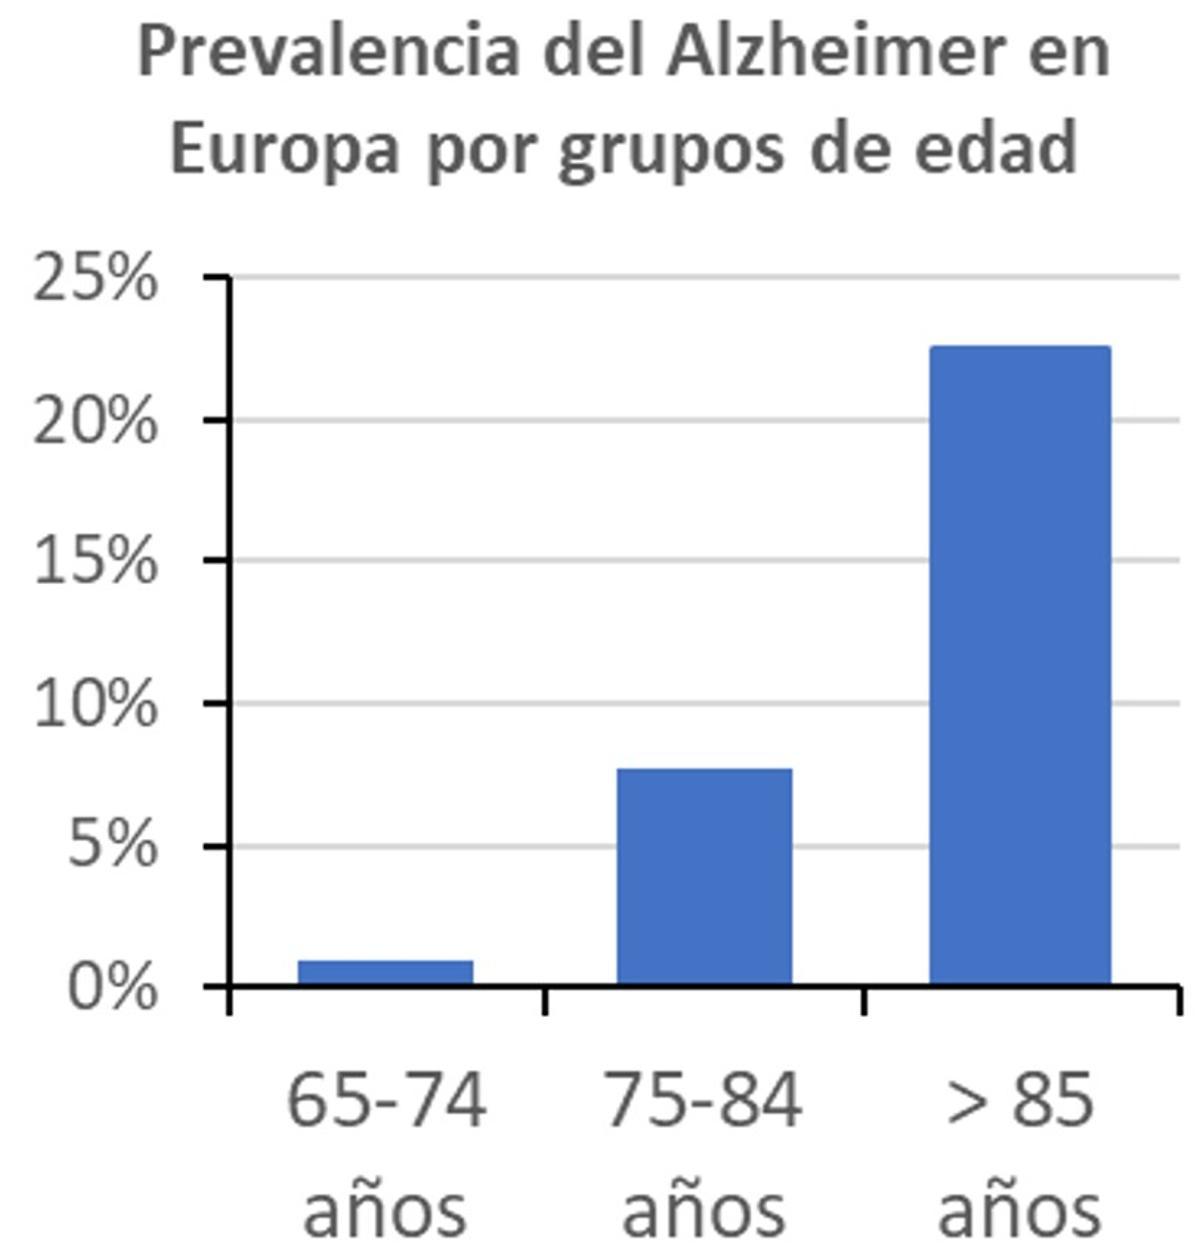 La prevalencia del Alzhéimer en Europa en el año 2020, por grupos de edad